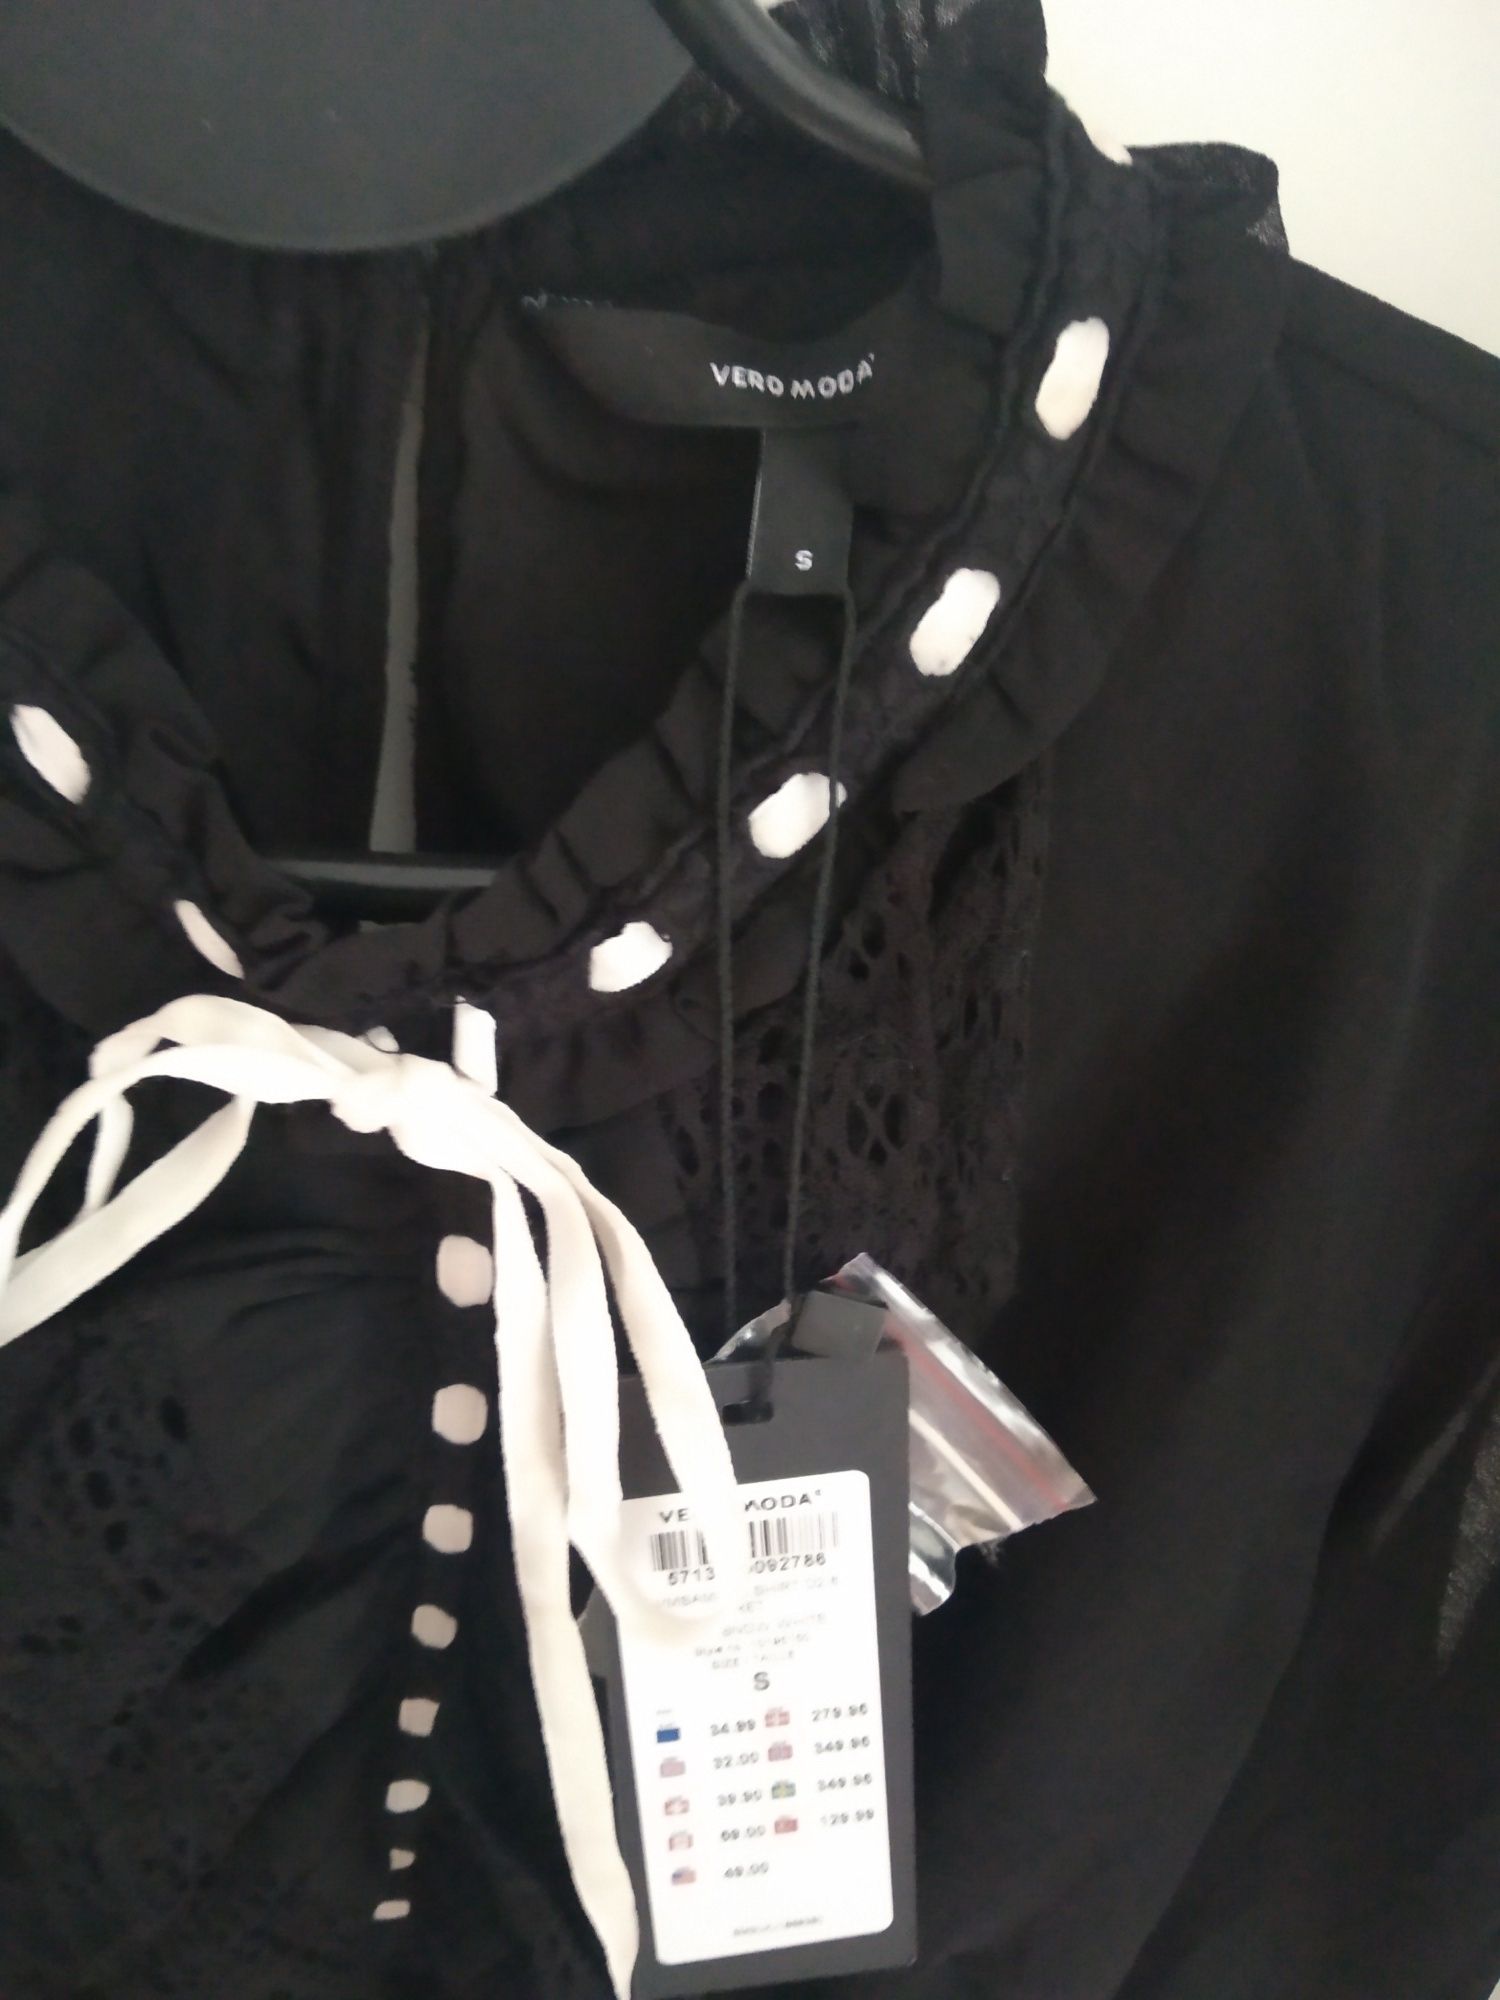 Bluzka czarna elegancka wiązana pod szyją Vero moda rozmiar S